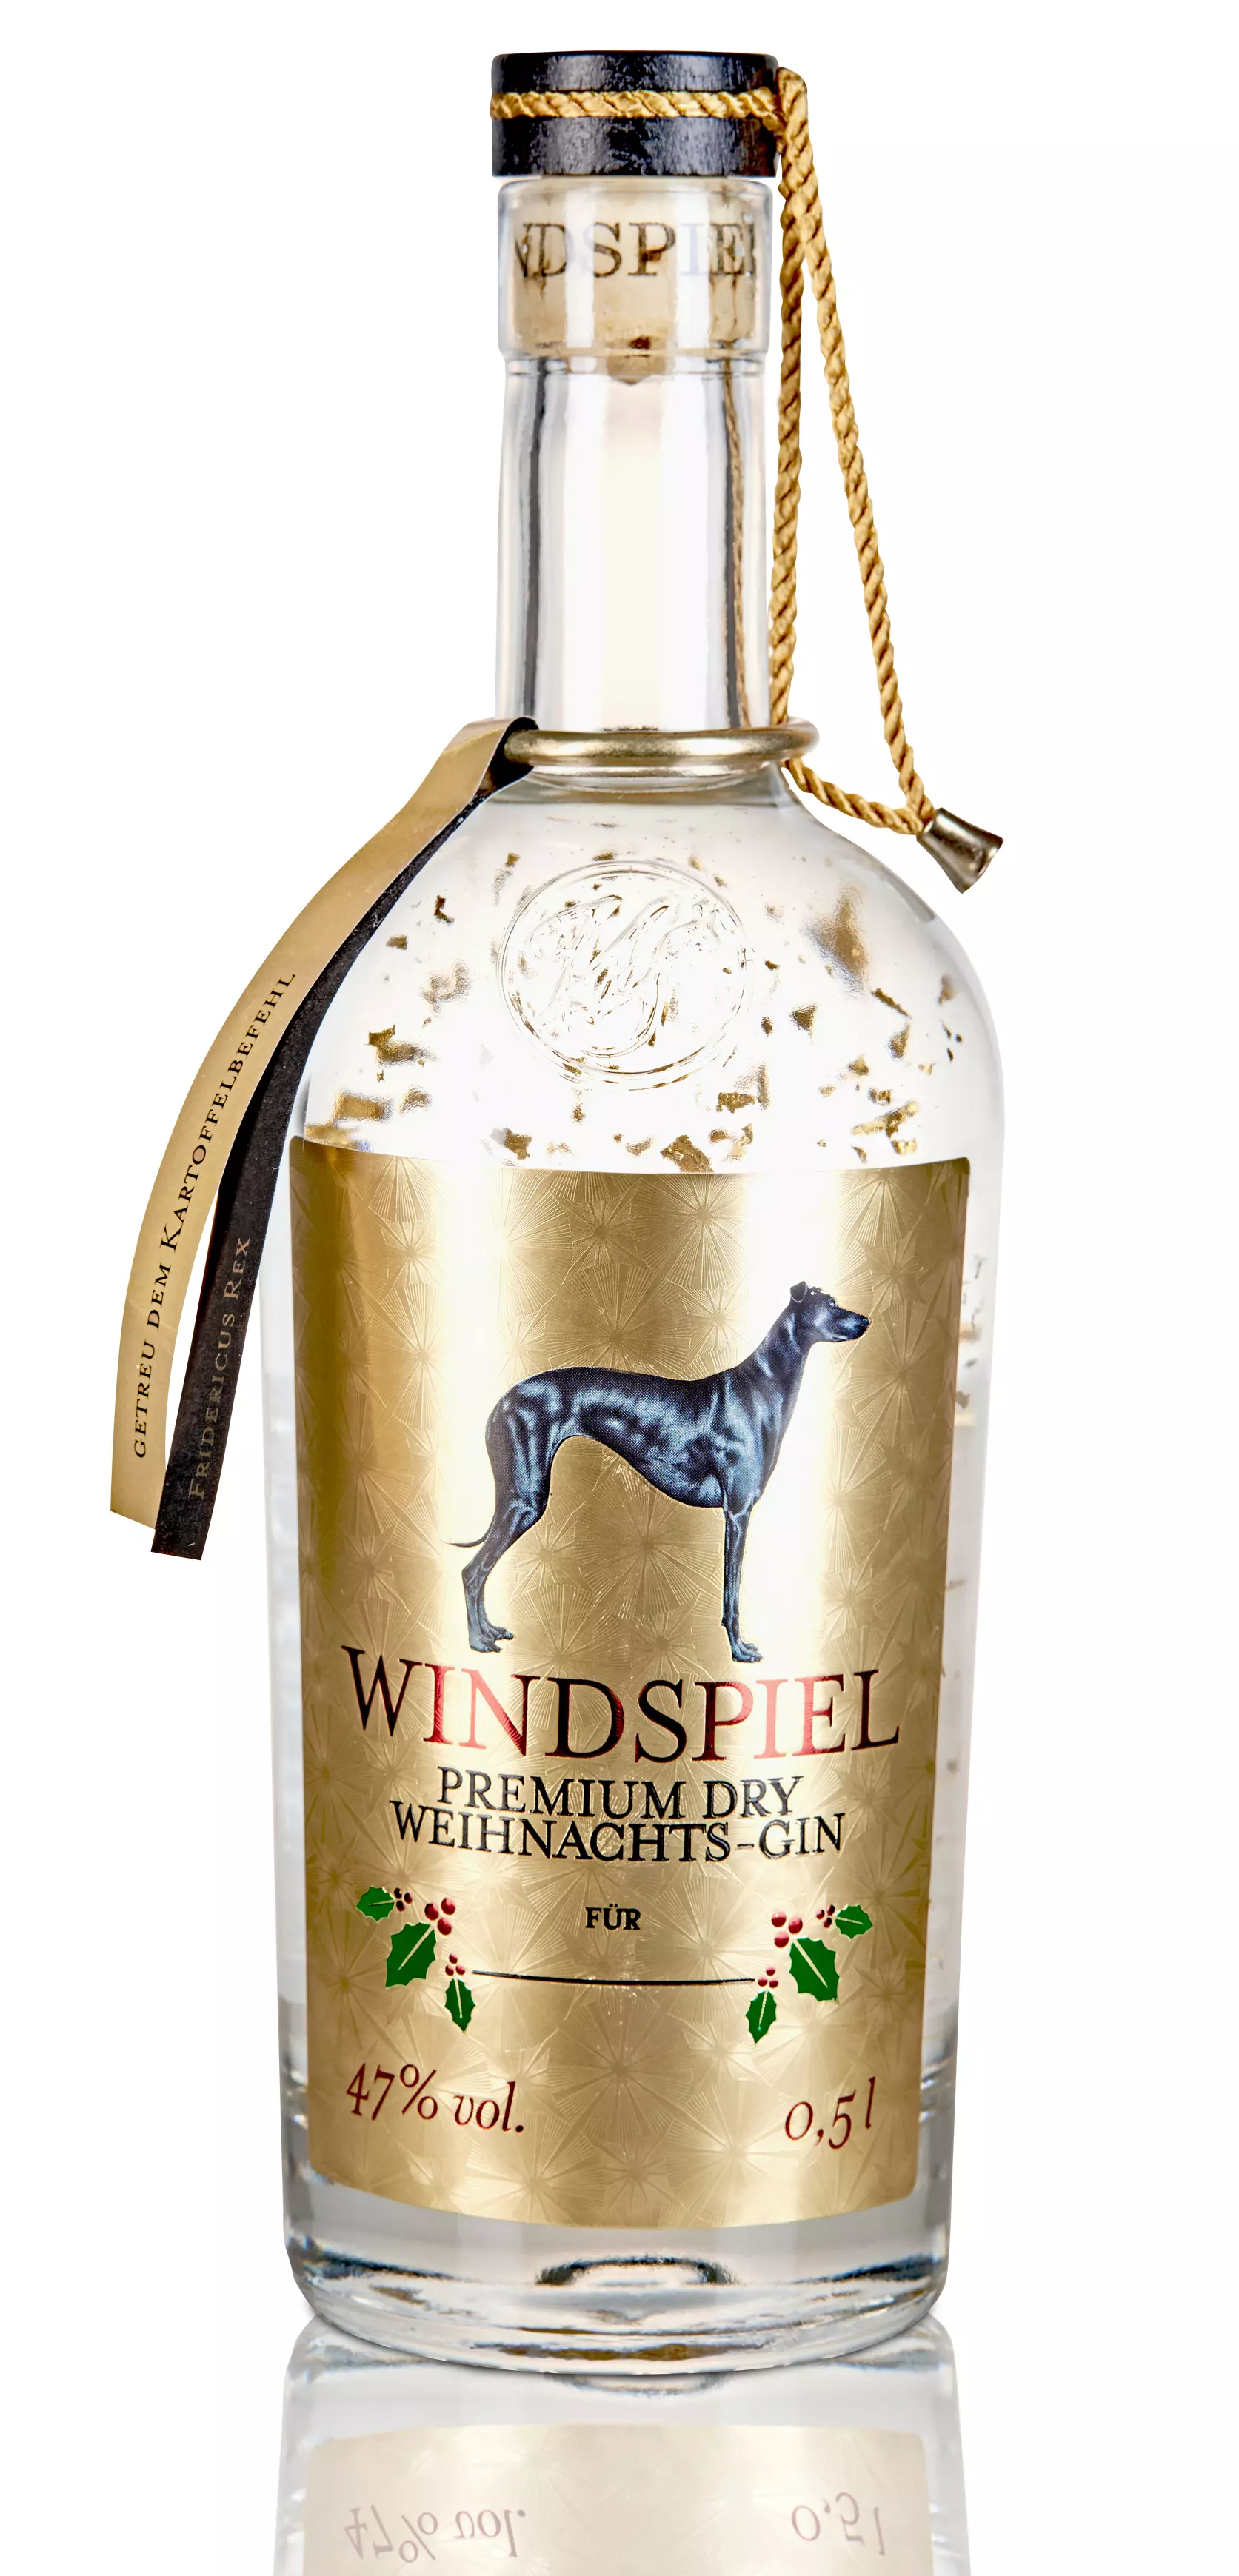 Windspiel Premium Dry Weihnachts-Gin 47% vol. 0,5 Liter